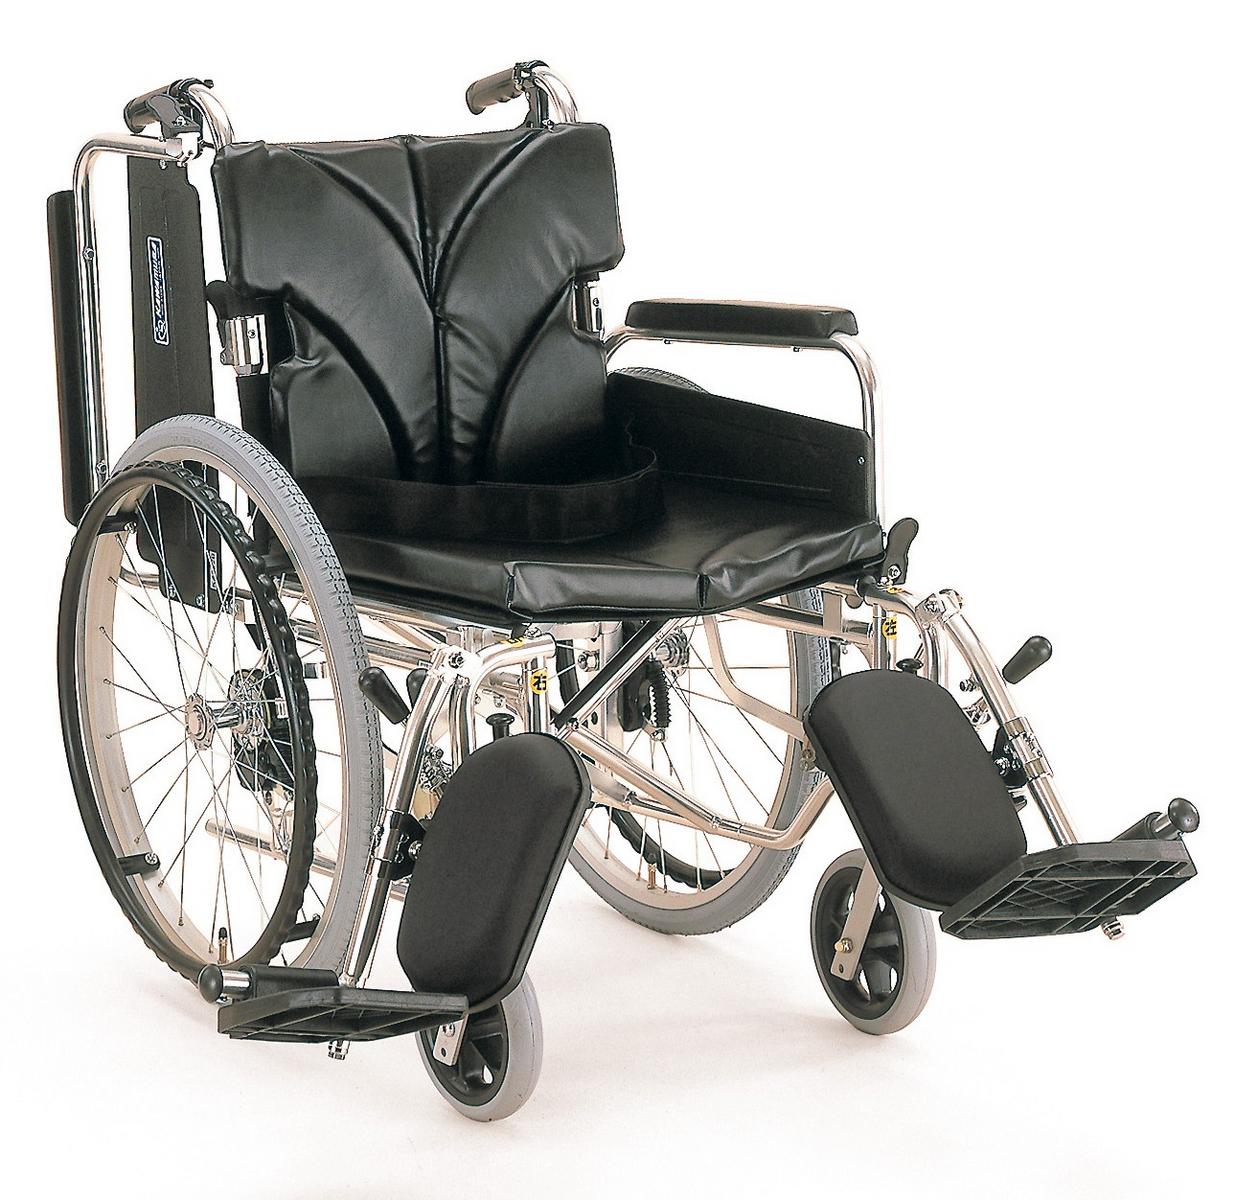 【車椅子】【車いす】【車イス】【送料無料】車椅子(カワムラ製) KA822-40(38.42)ELB 機能＝アルミ・背折・バンド・座幅選択・シート色選択・脚部エレベーティング 62%off送料無料